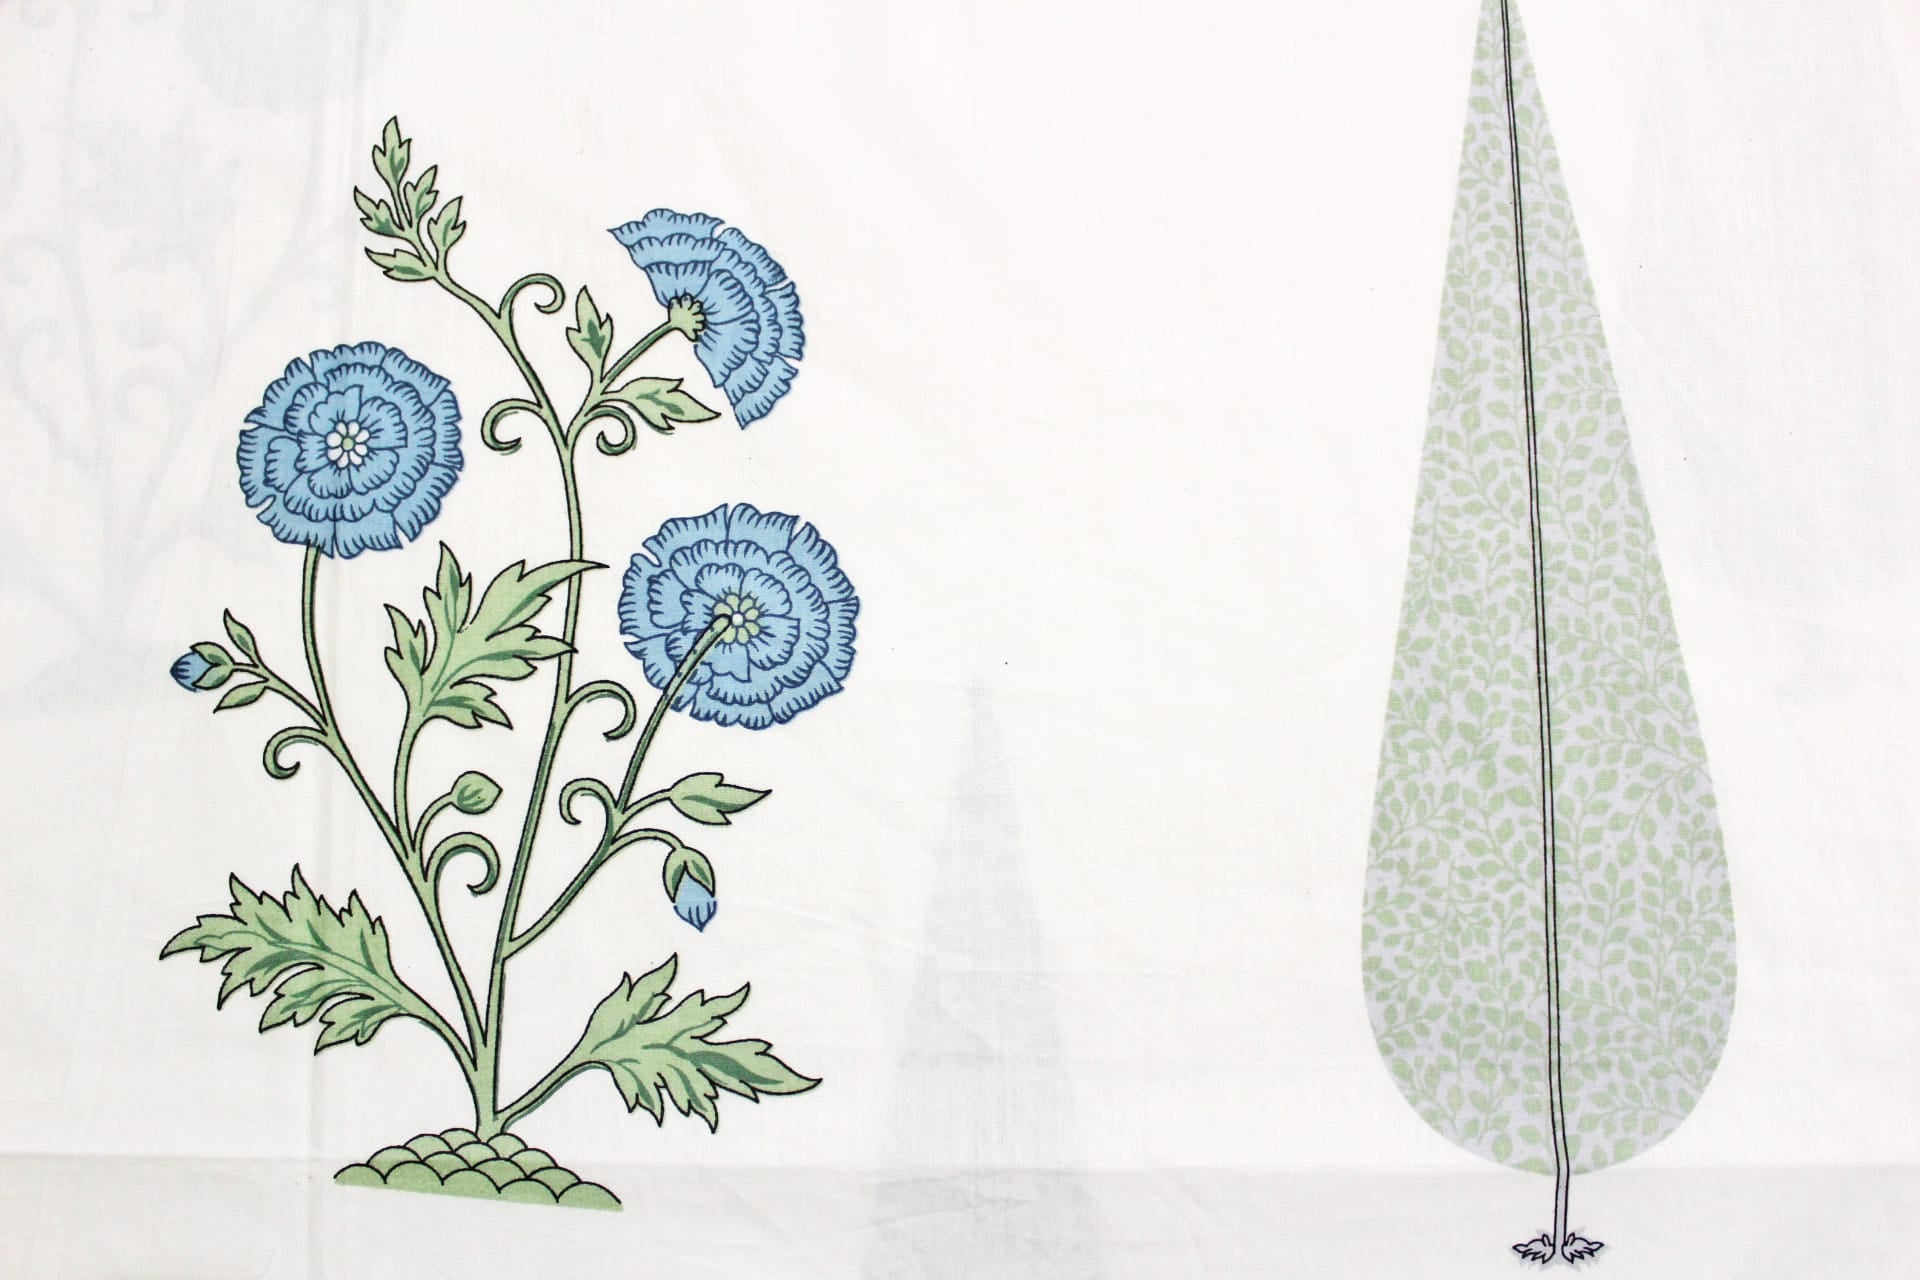 Printed Floral Cotton 250 TC Duvet Cover - Blue